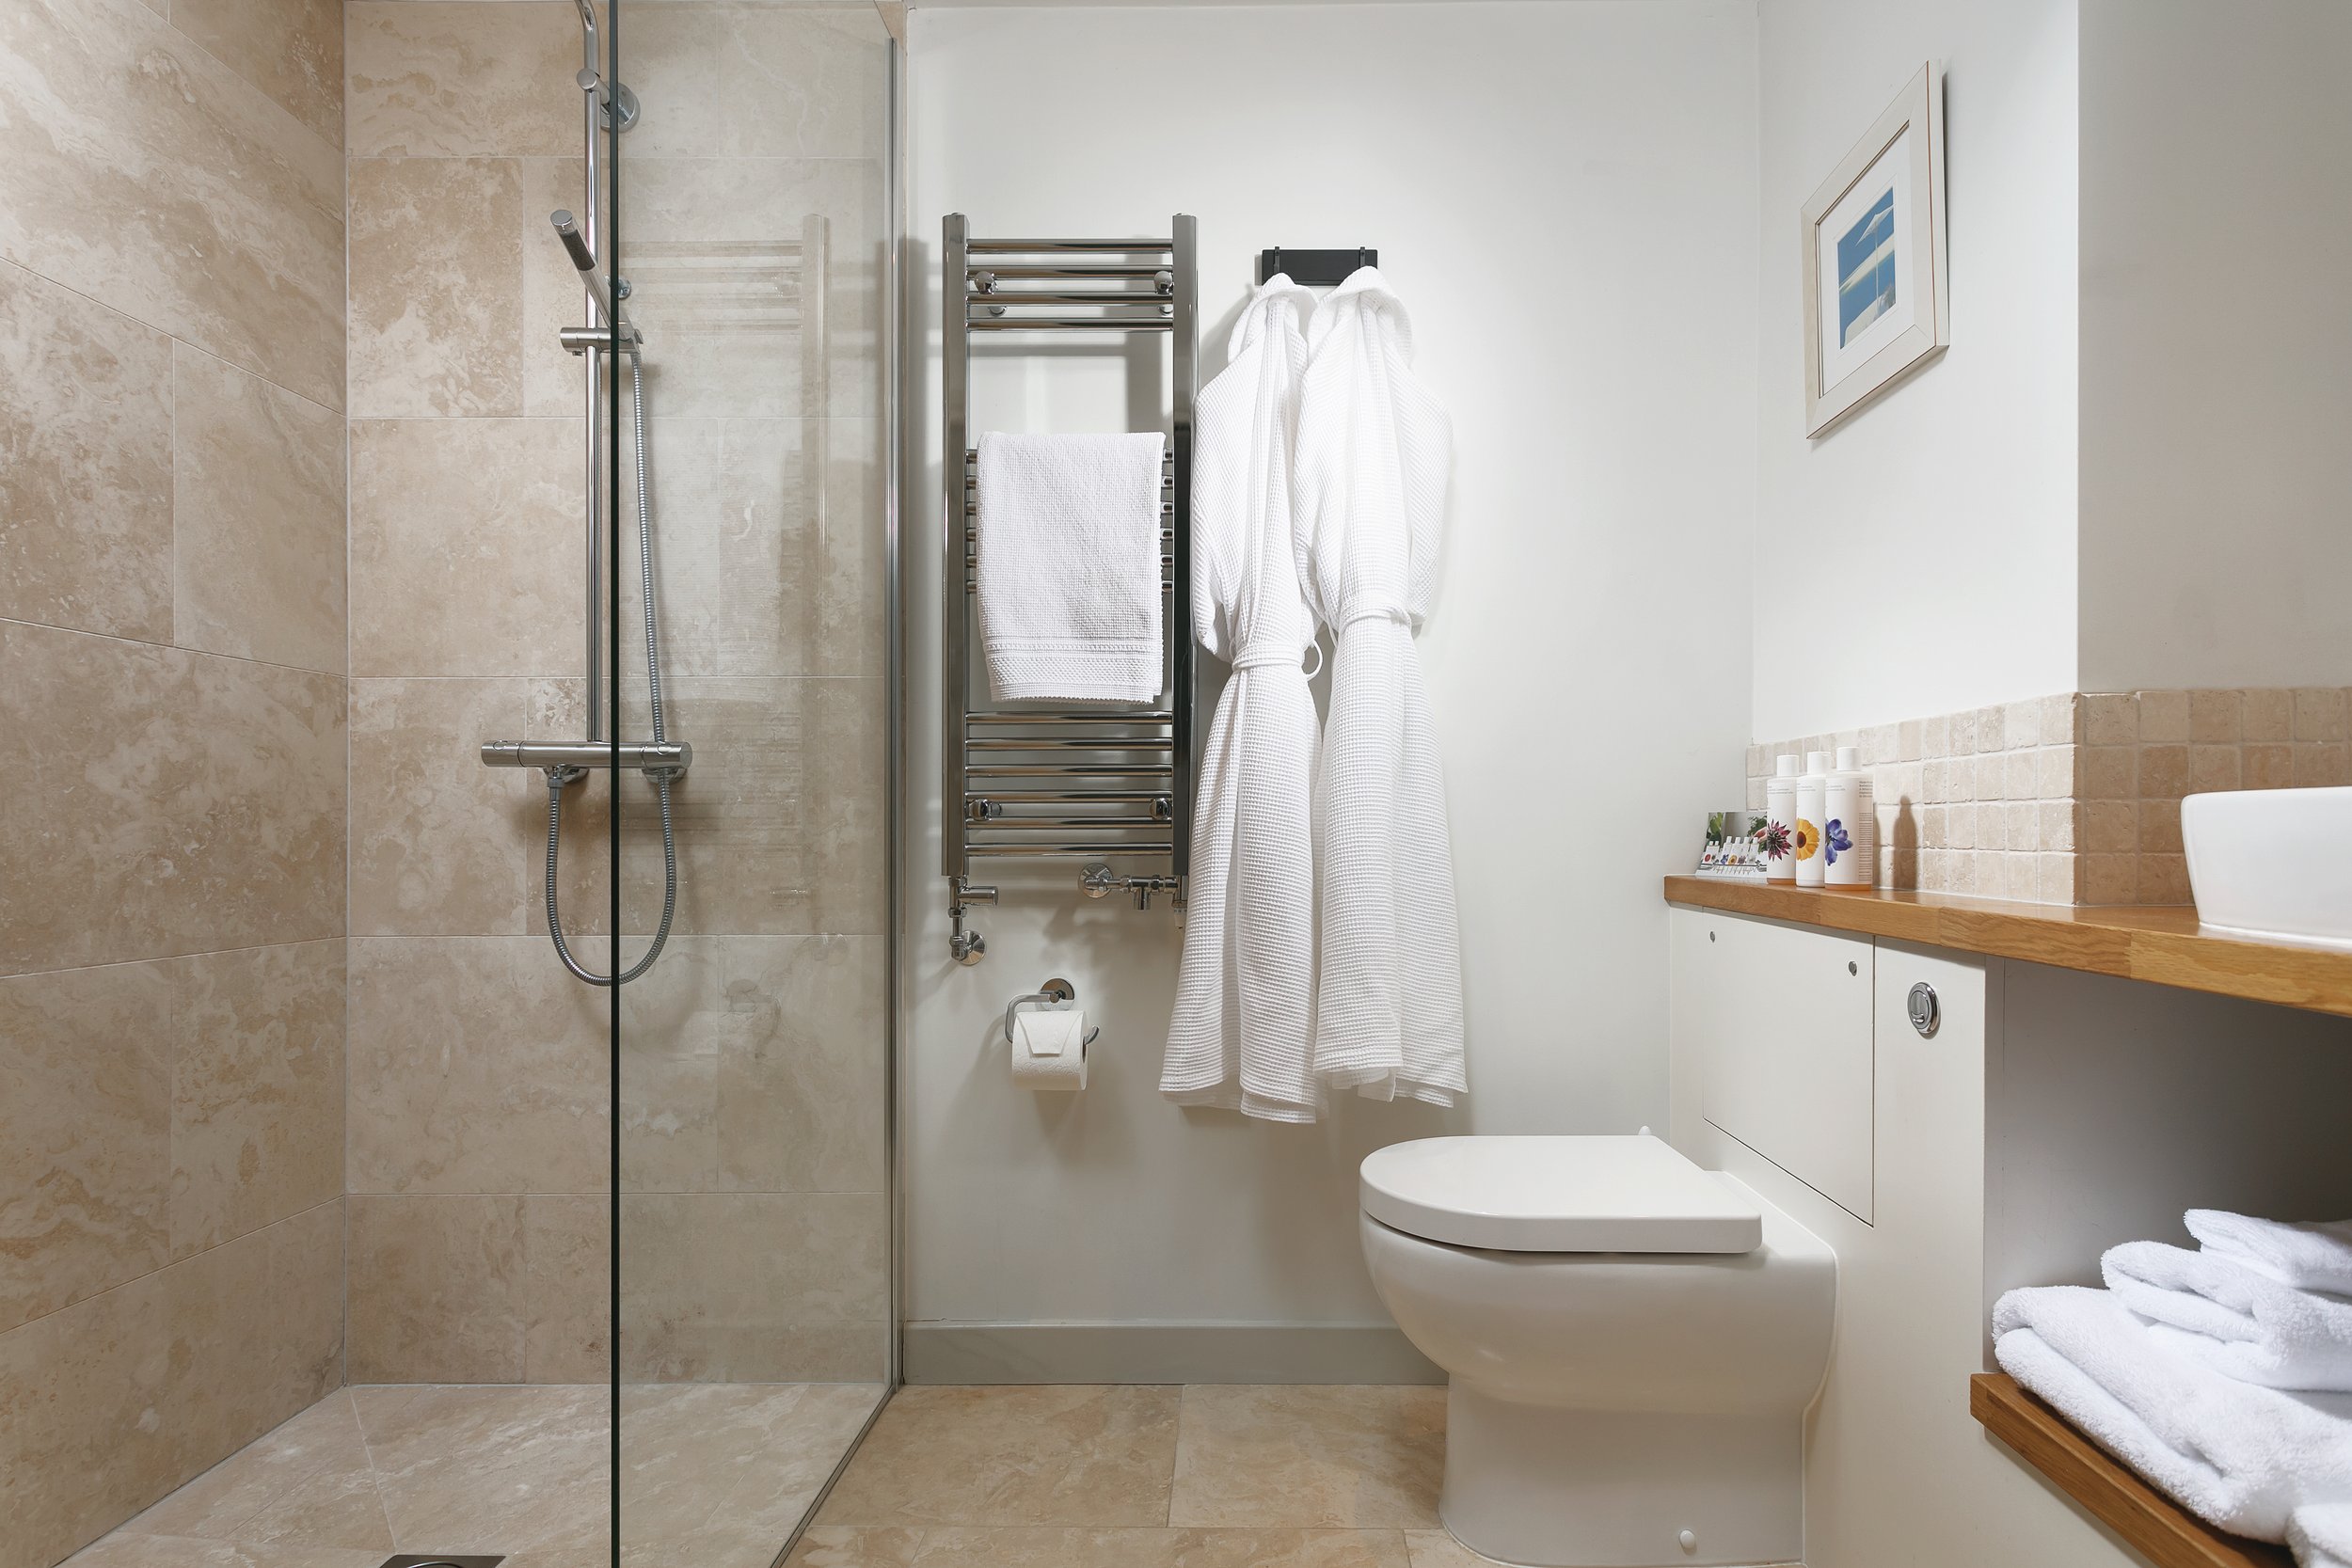 Ennys_Trencrom Studio Suite luxury walk-in shower (Copy)